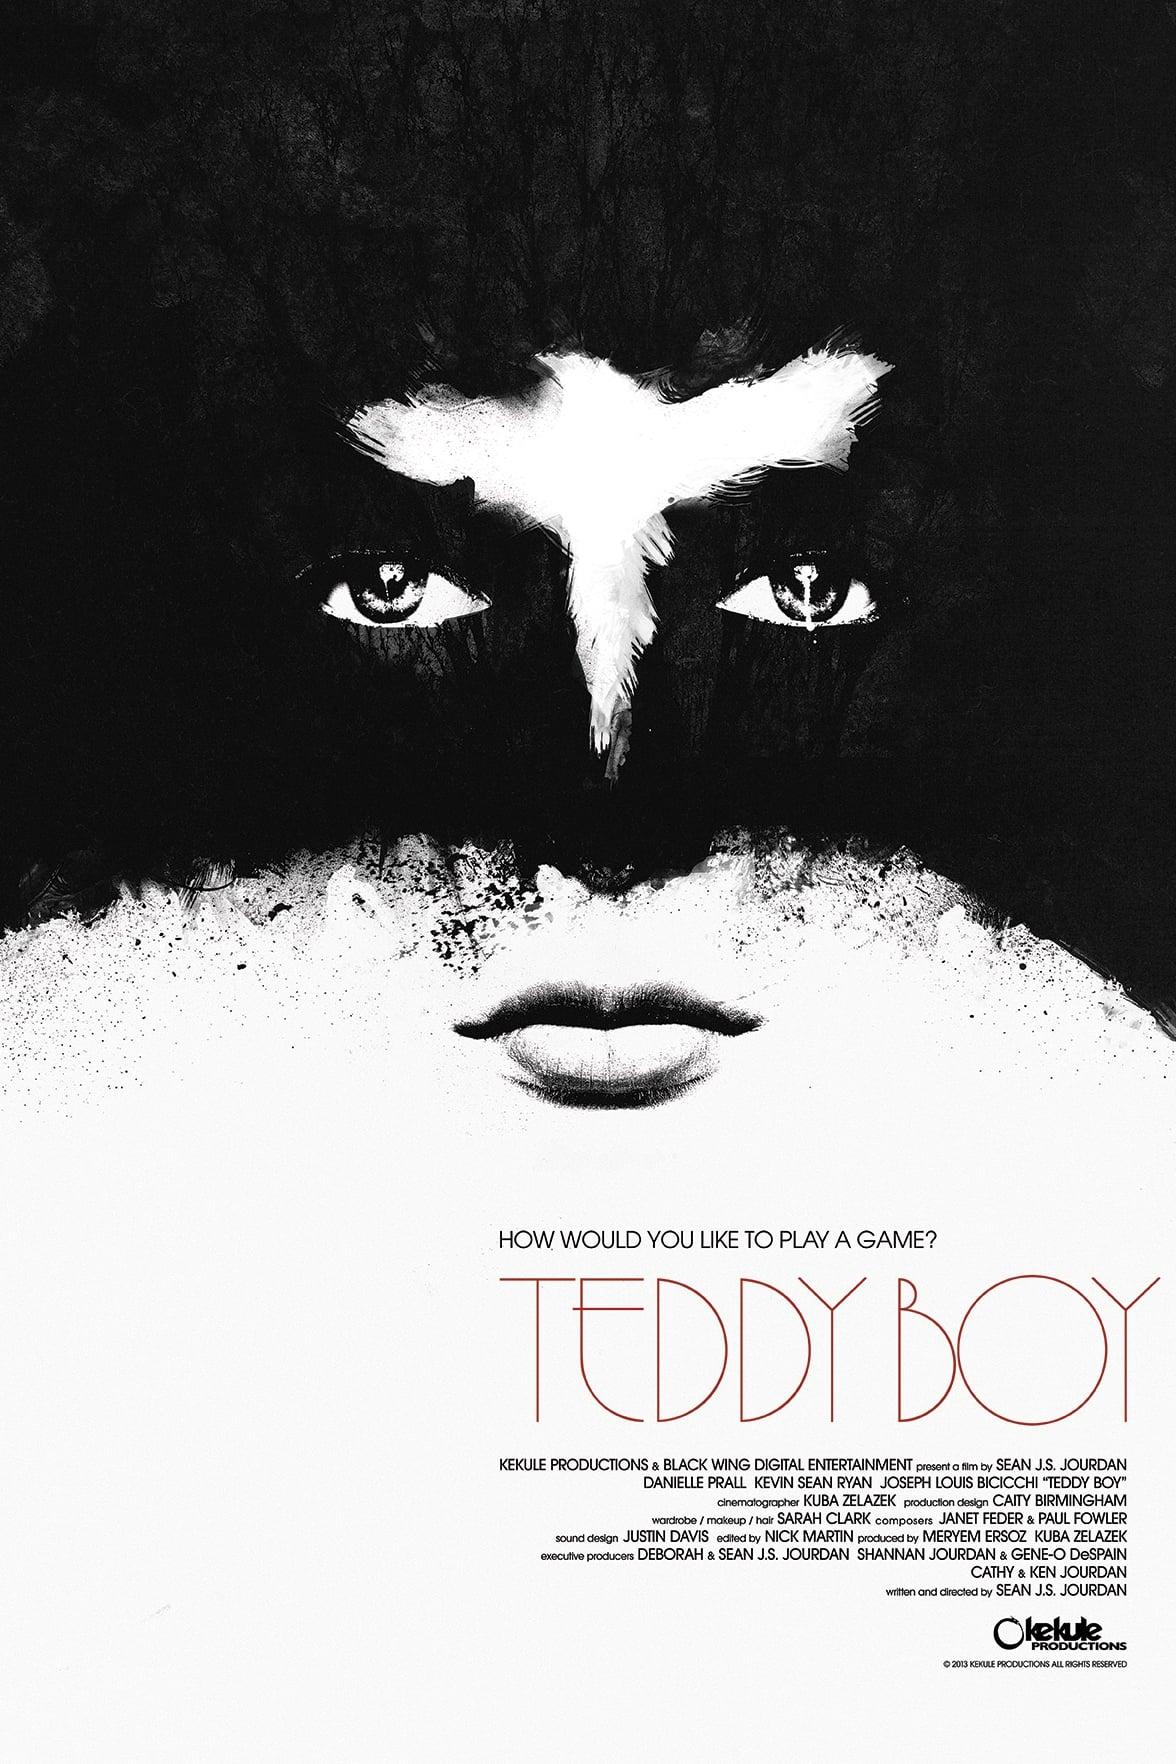 Teddy Boy poster